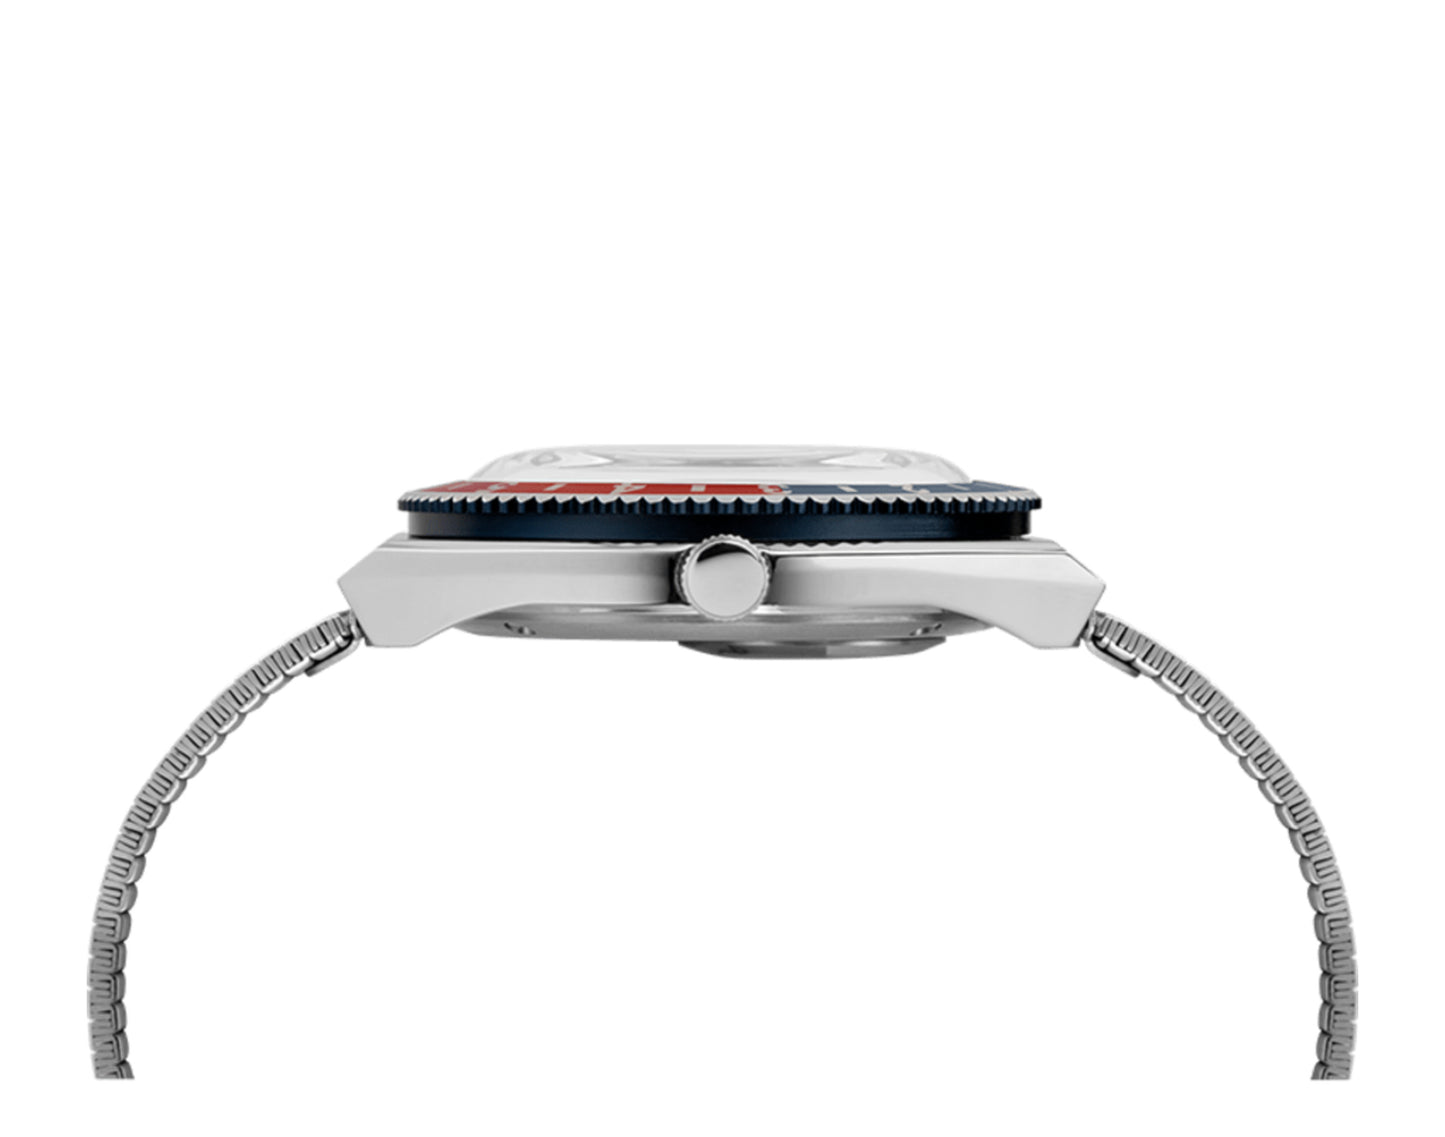 Timex Q Reissue 38mm Stainless Steel Bracelet White/Blue/Red Watch TW2U61200ZV